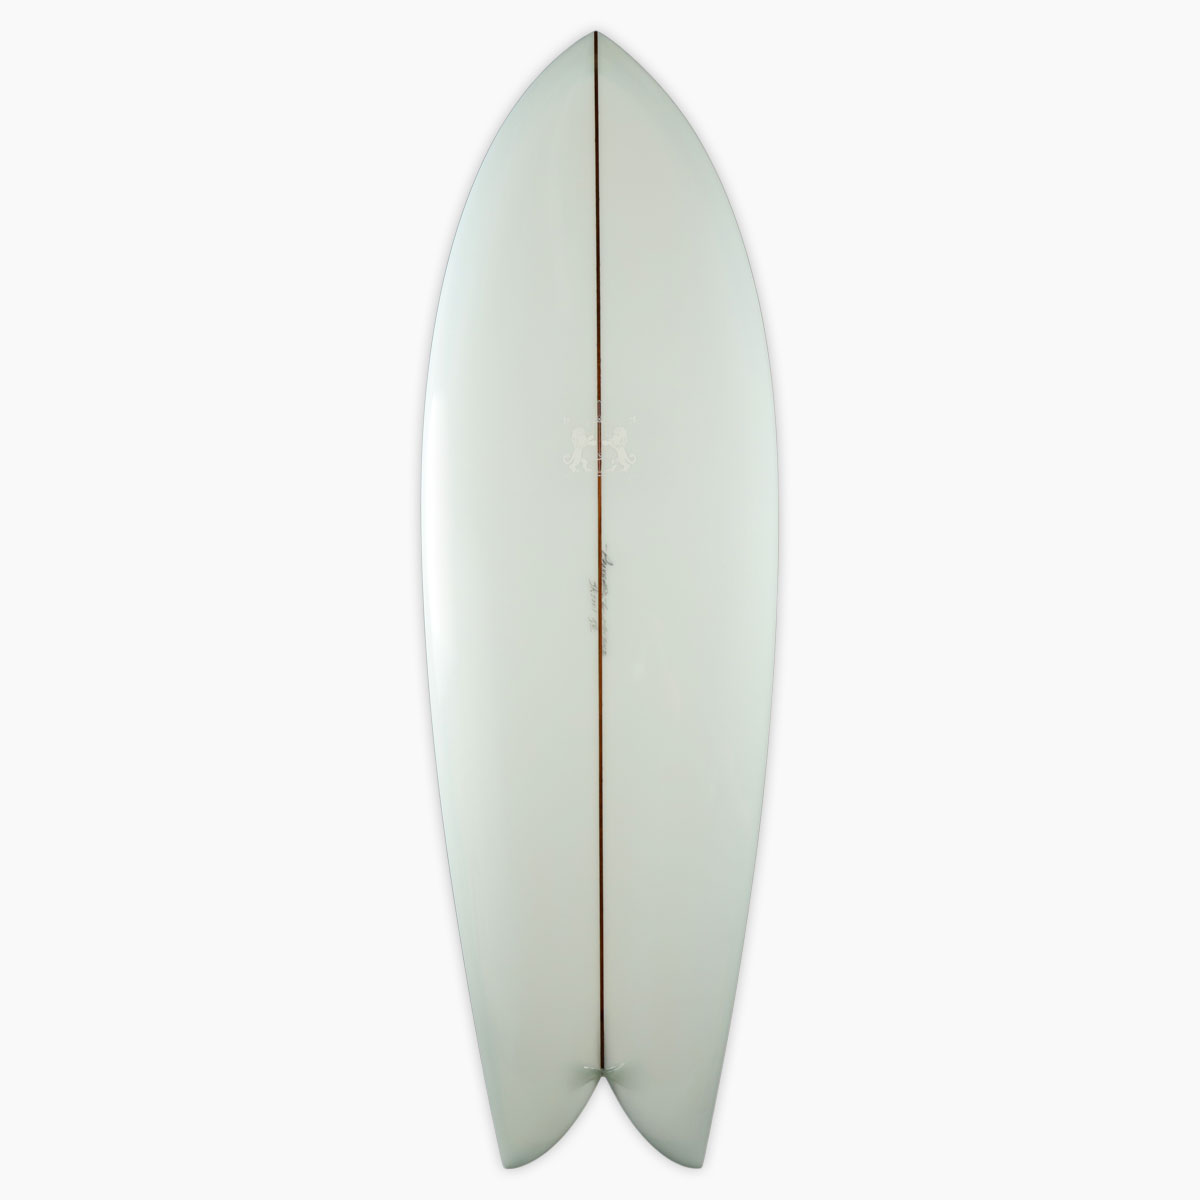 SurfBoardNet / ブランド:LARRY MABILE SURFBOARDS モデル:CLASSIC FISH